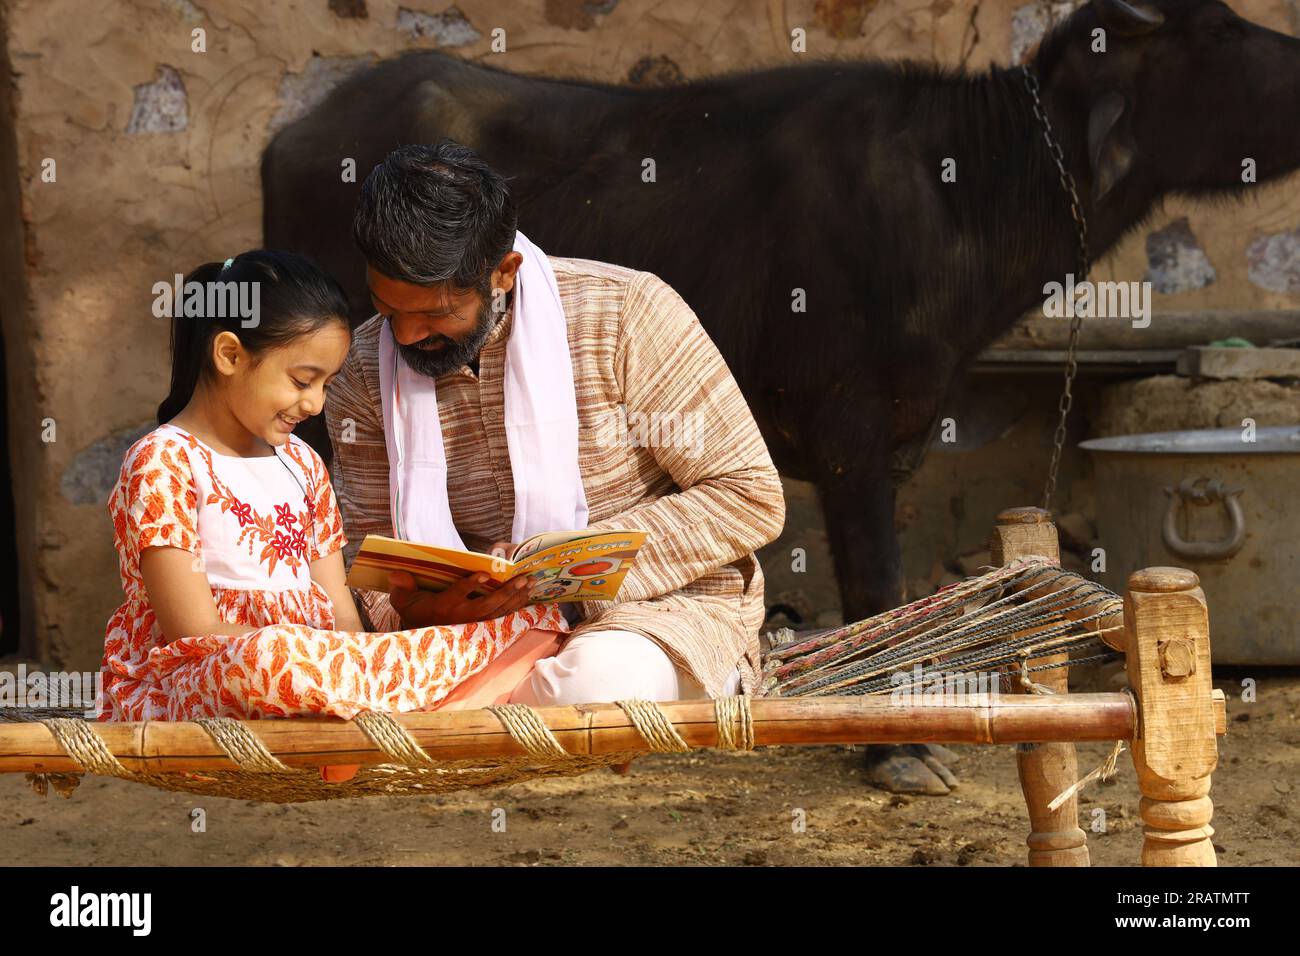 Padre e figlia rurale indiani che studiano il libro insieme. L'educazione infantile raggiunge tutti i villaggi dell'India. Gli agricoltori sono consapevoli di insegnare alla loro figlia. Foto Stock